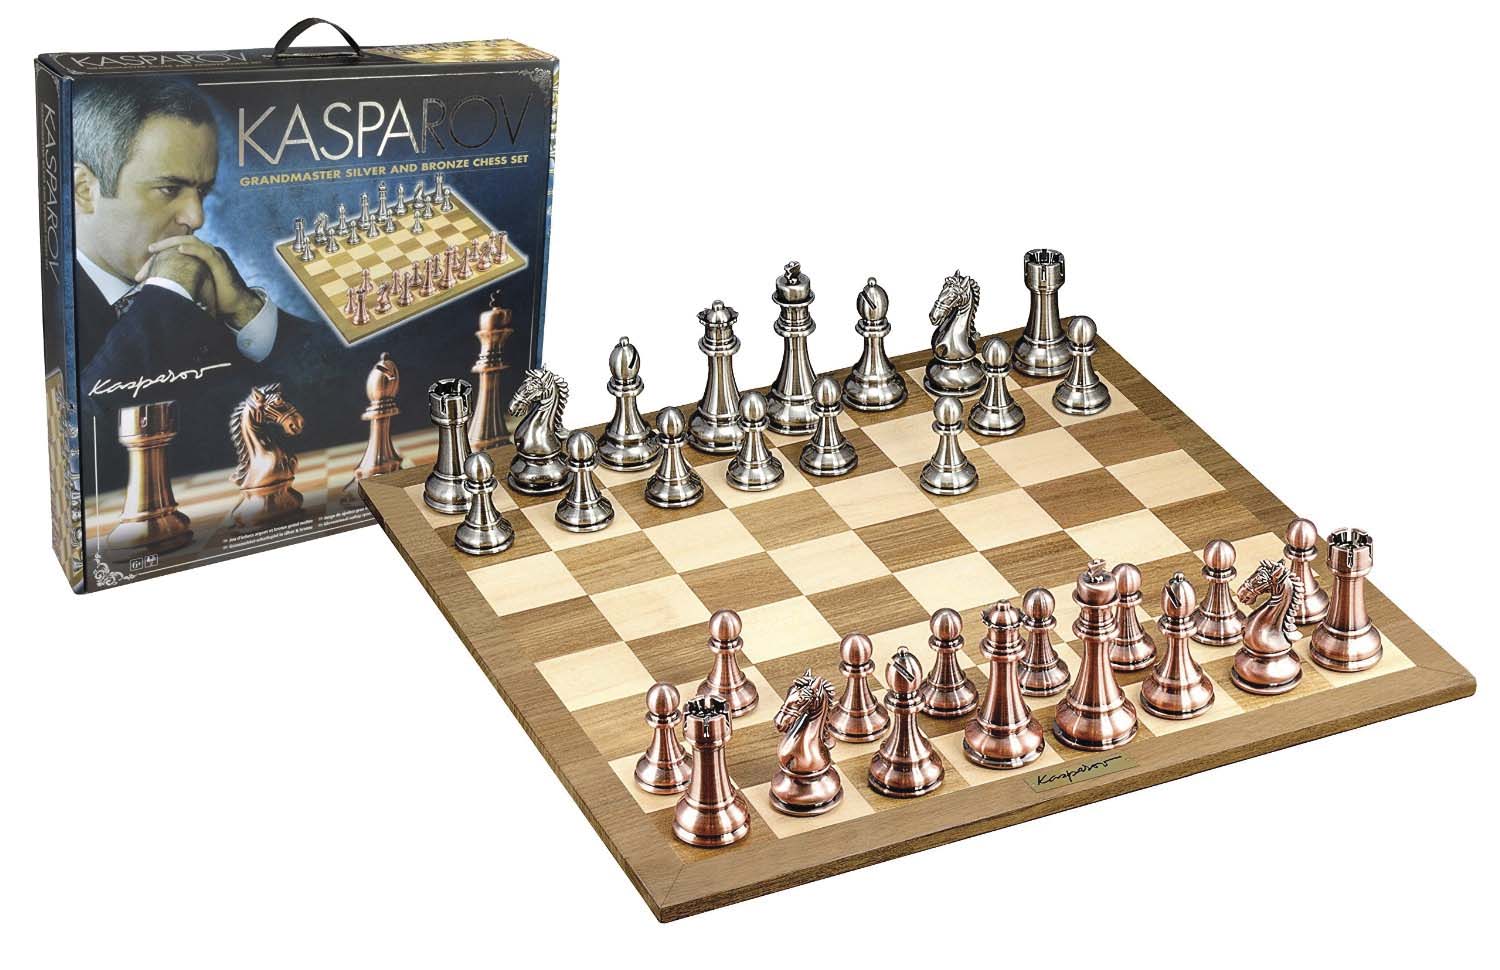 Free kasparov chess download